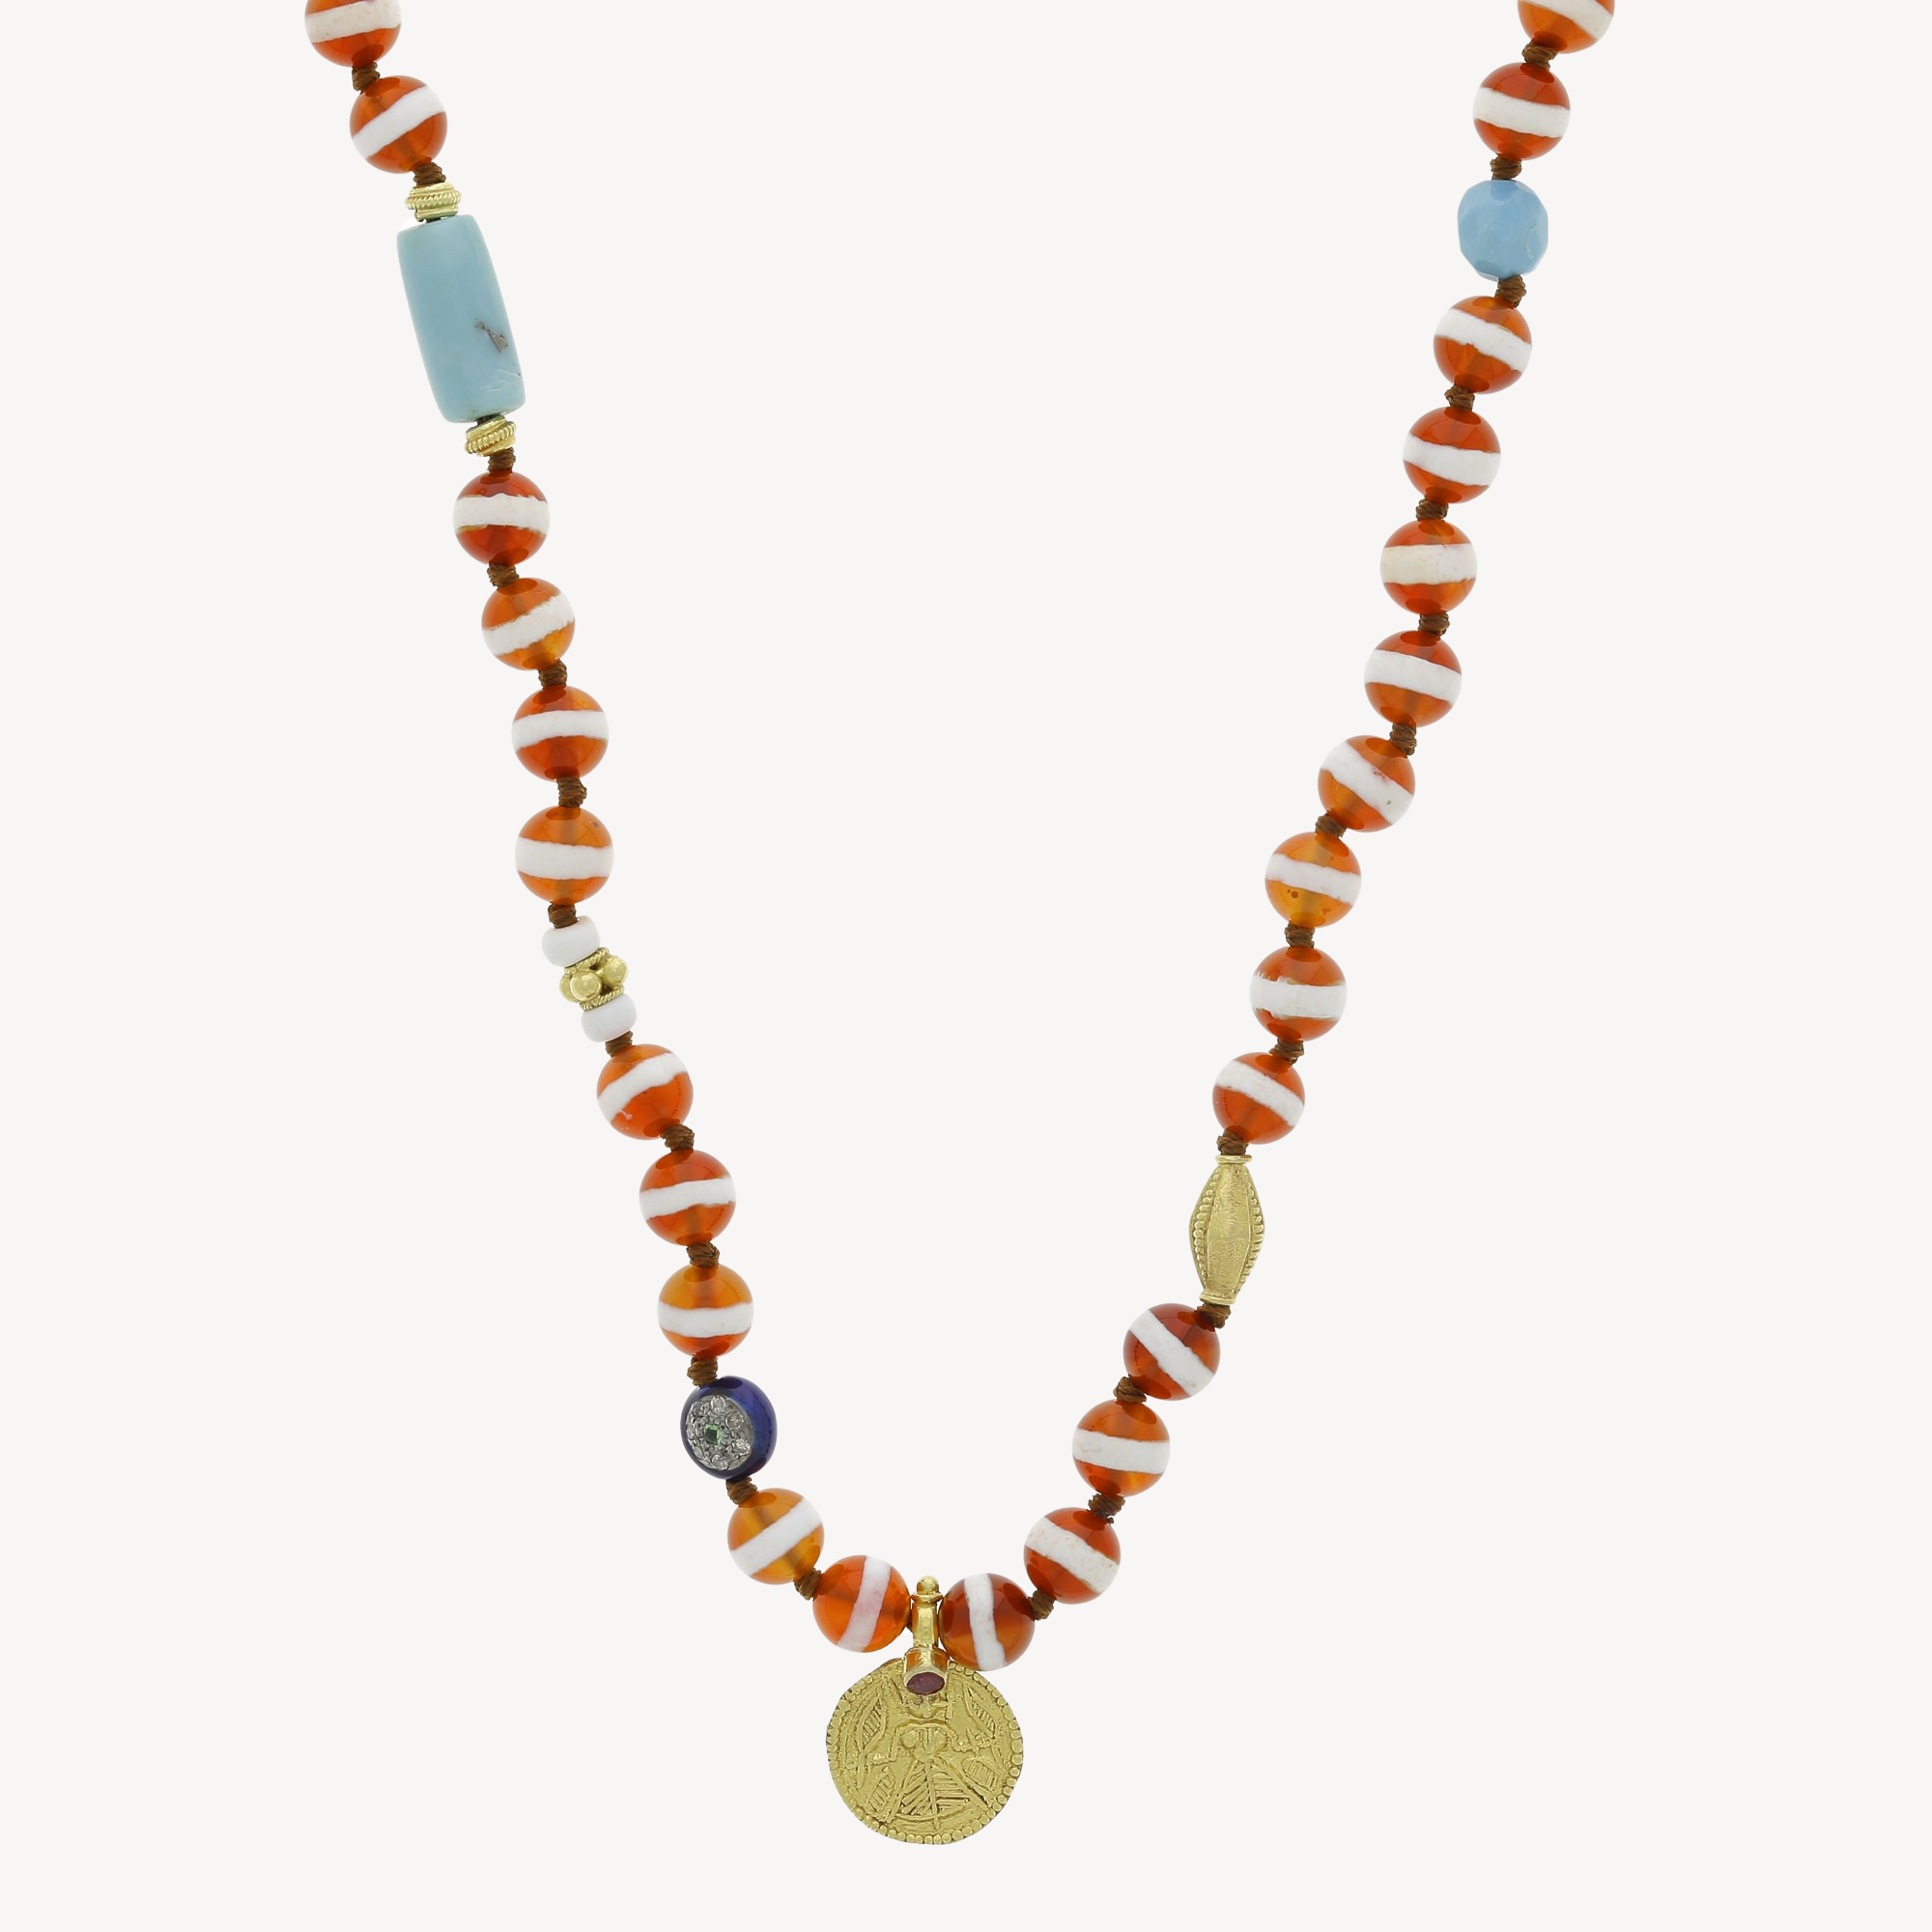 Braune Achat-Streifen-Perlen-Halskette, runde Medaille